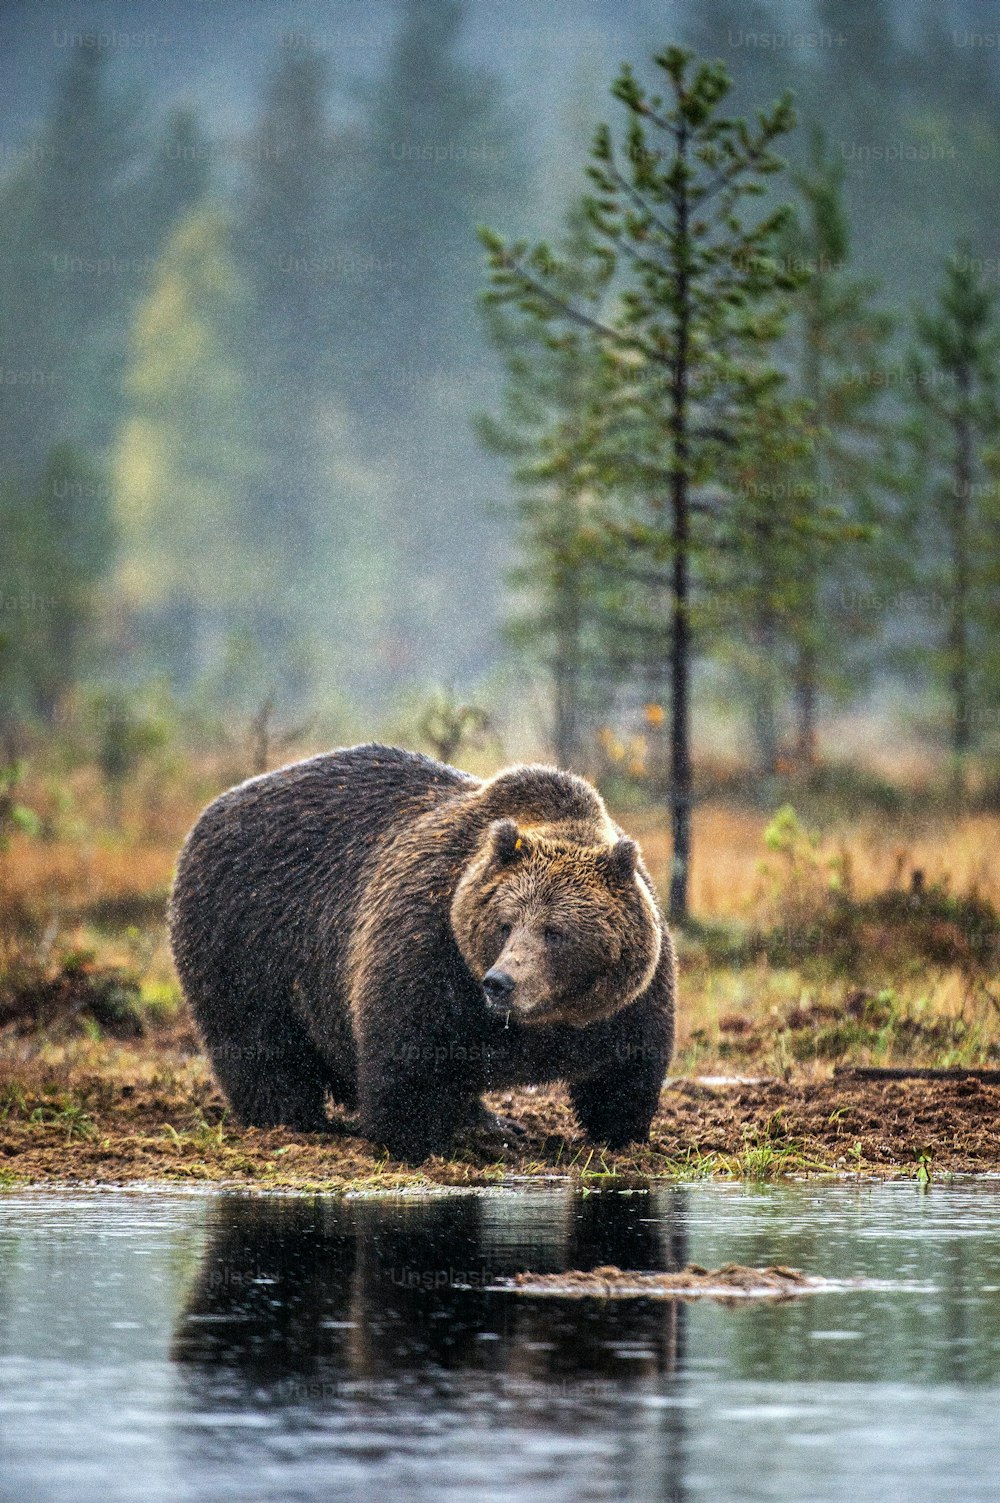 Un oso pardo en la ciénaga del bosque otoñal. Macho adulto de oso pardo grande. Nombre científico: Ursus arctos. Hábitat natural, estación otoñal.